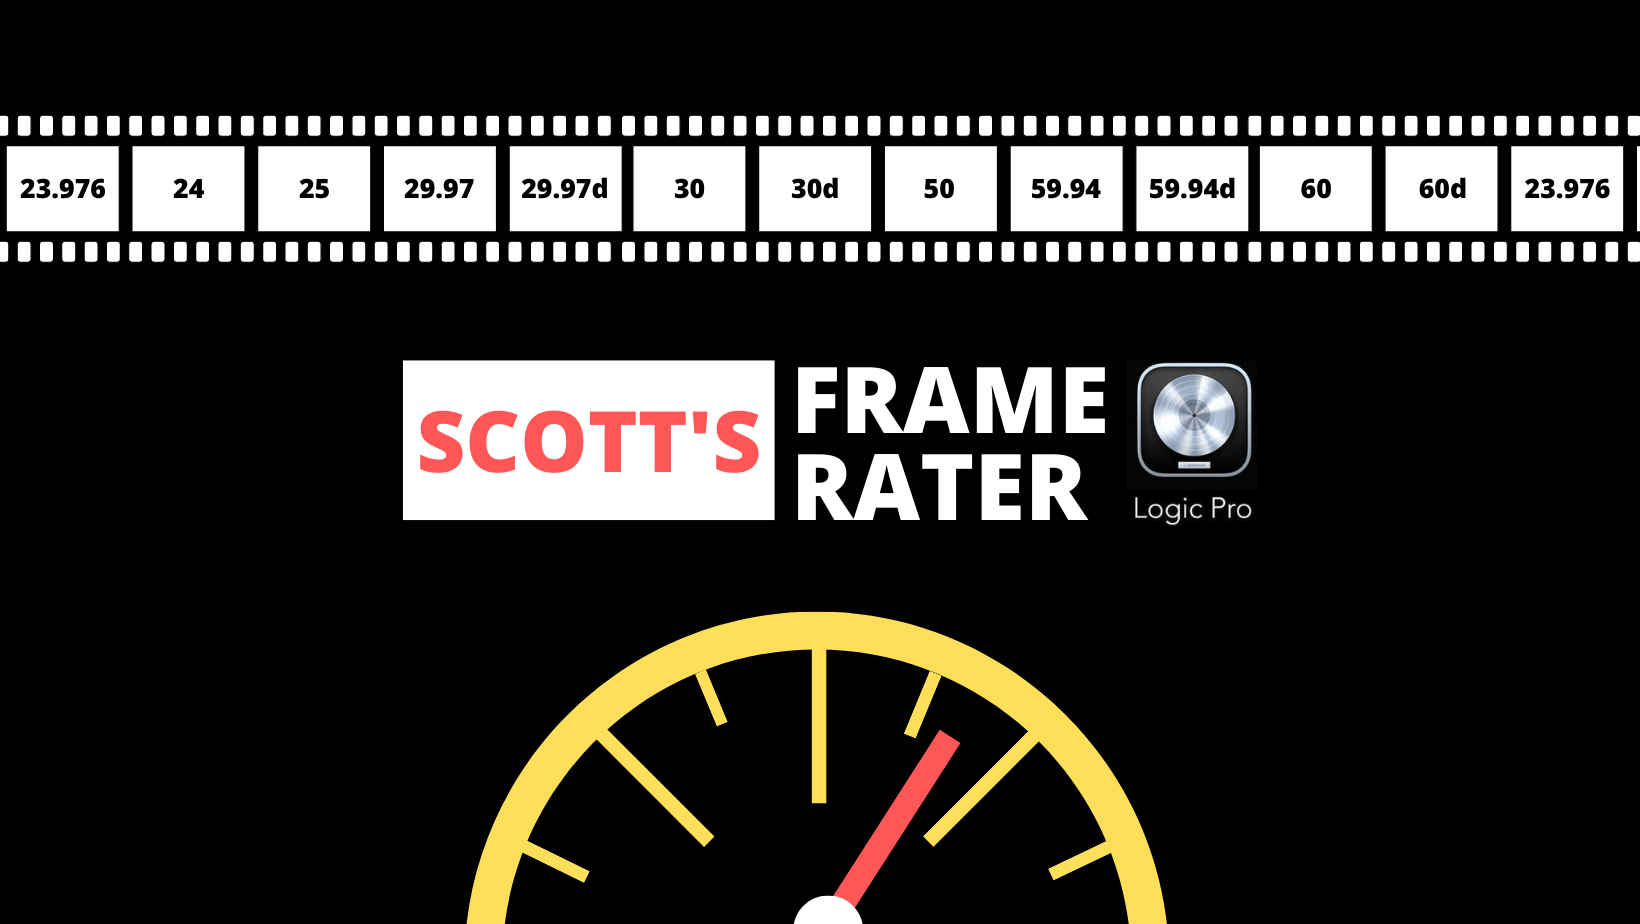 Scott's Logic X Frame Rater